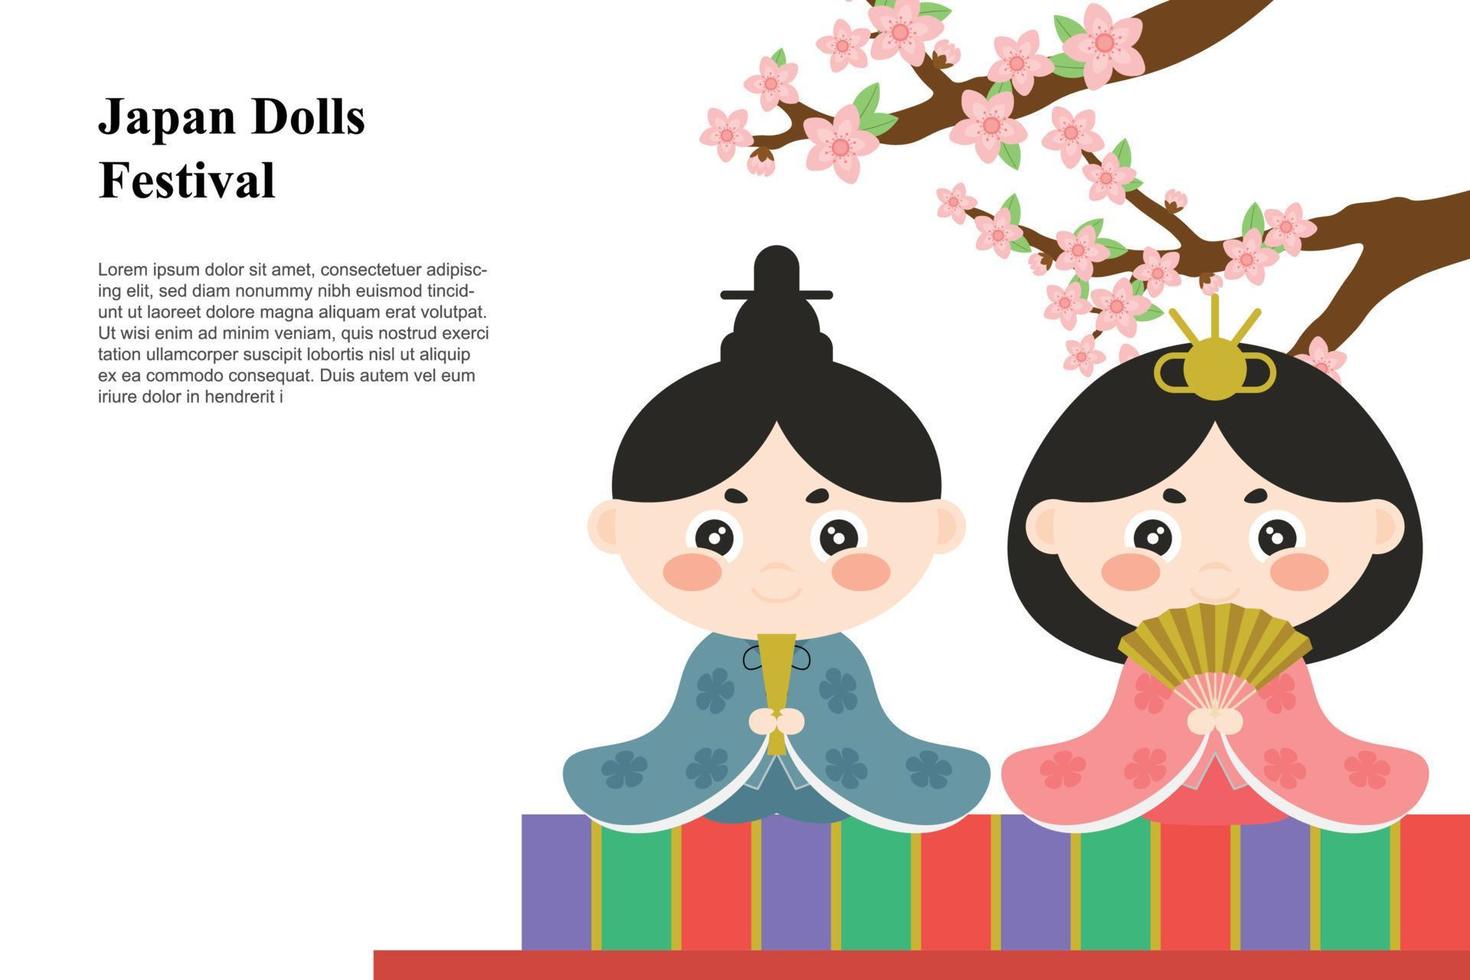 fond de festival de poupées du japon. vecteur